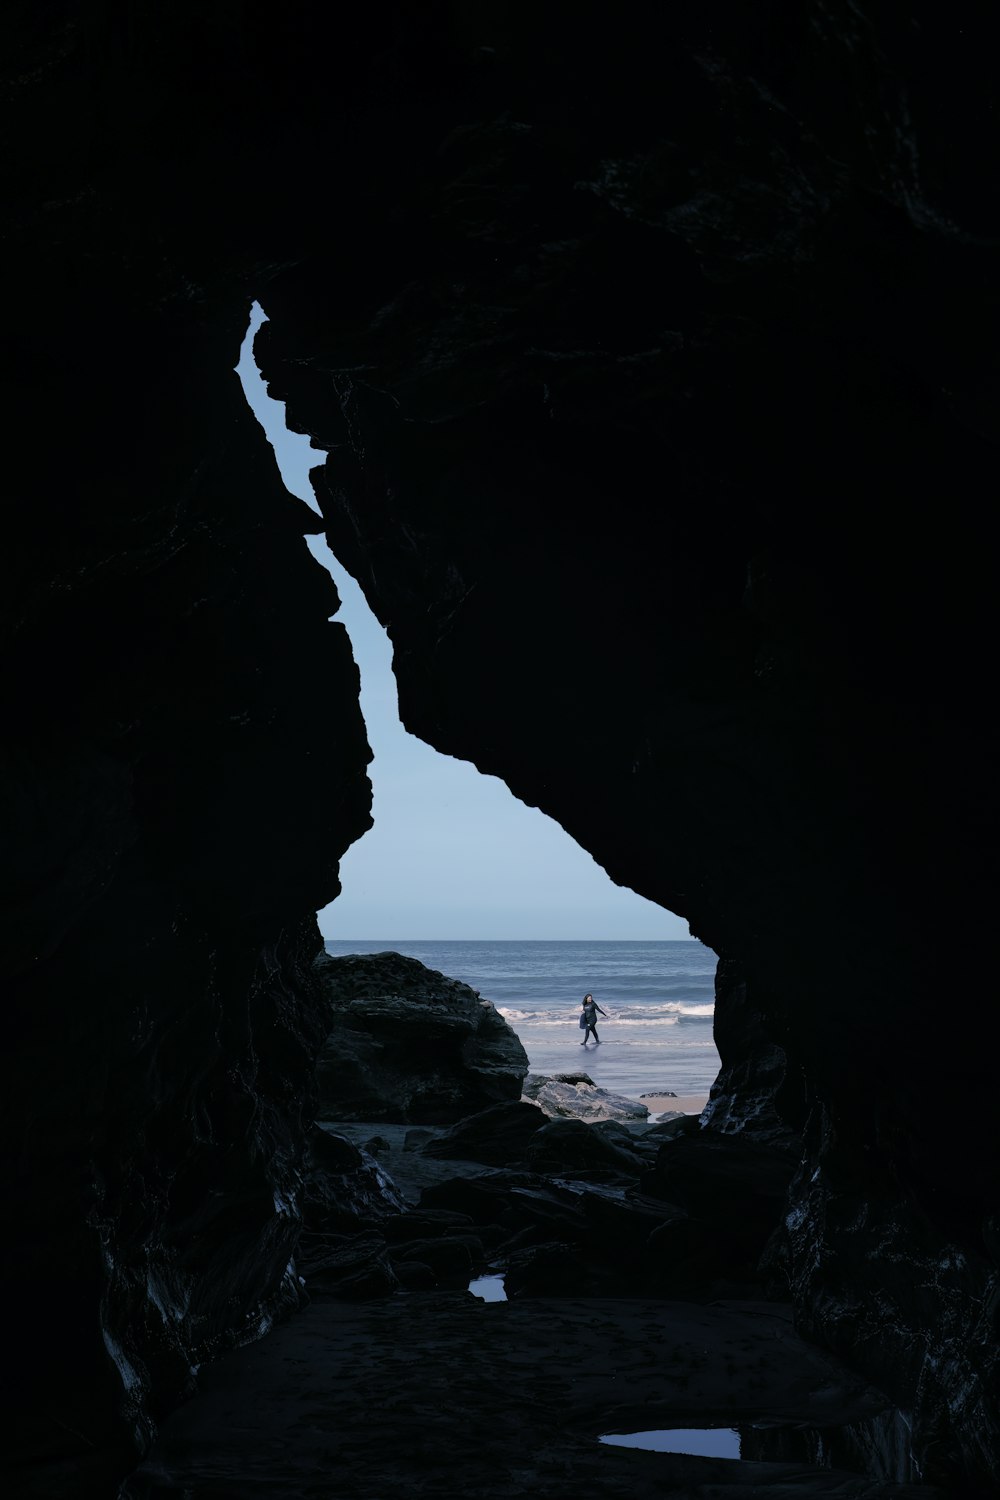 洞窟に立って海を眺める人